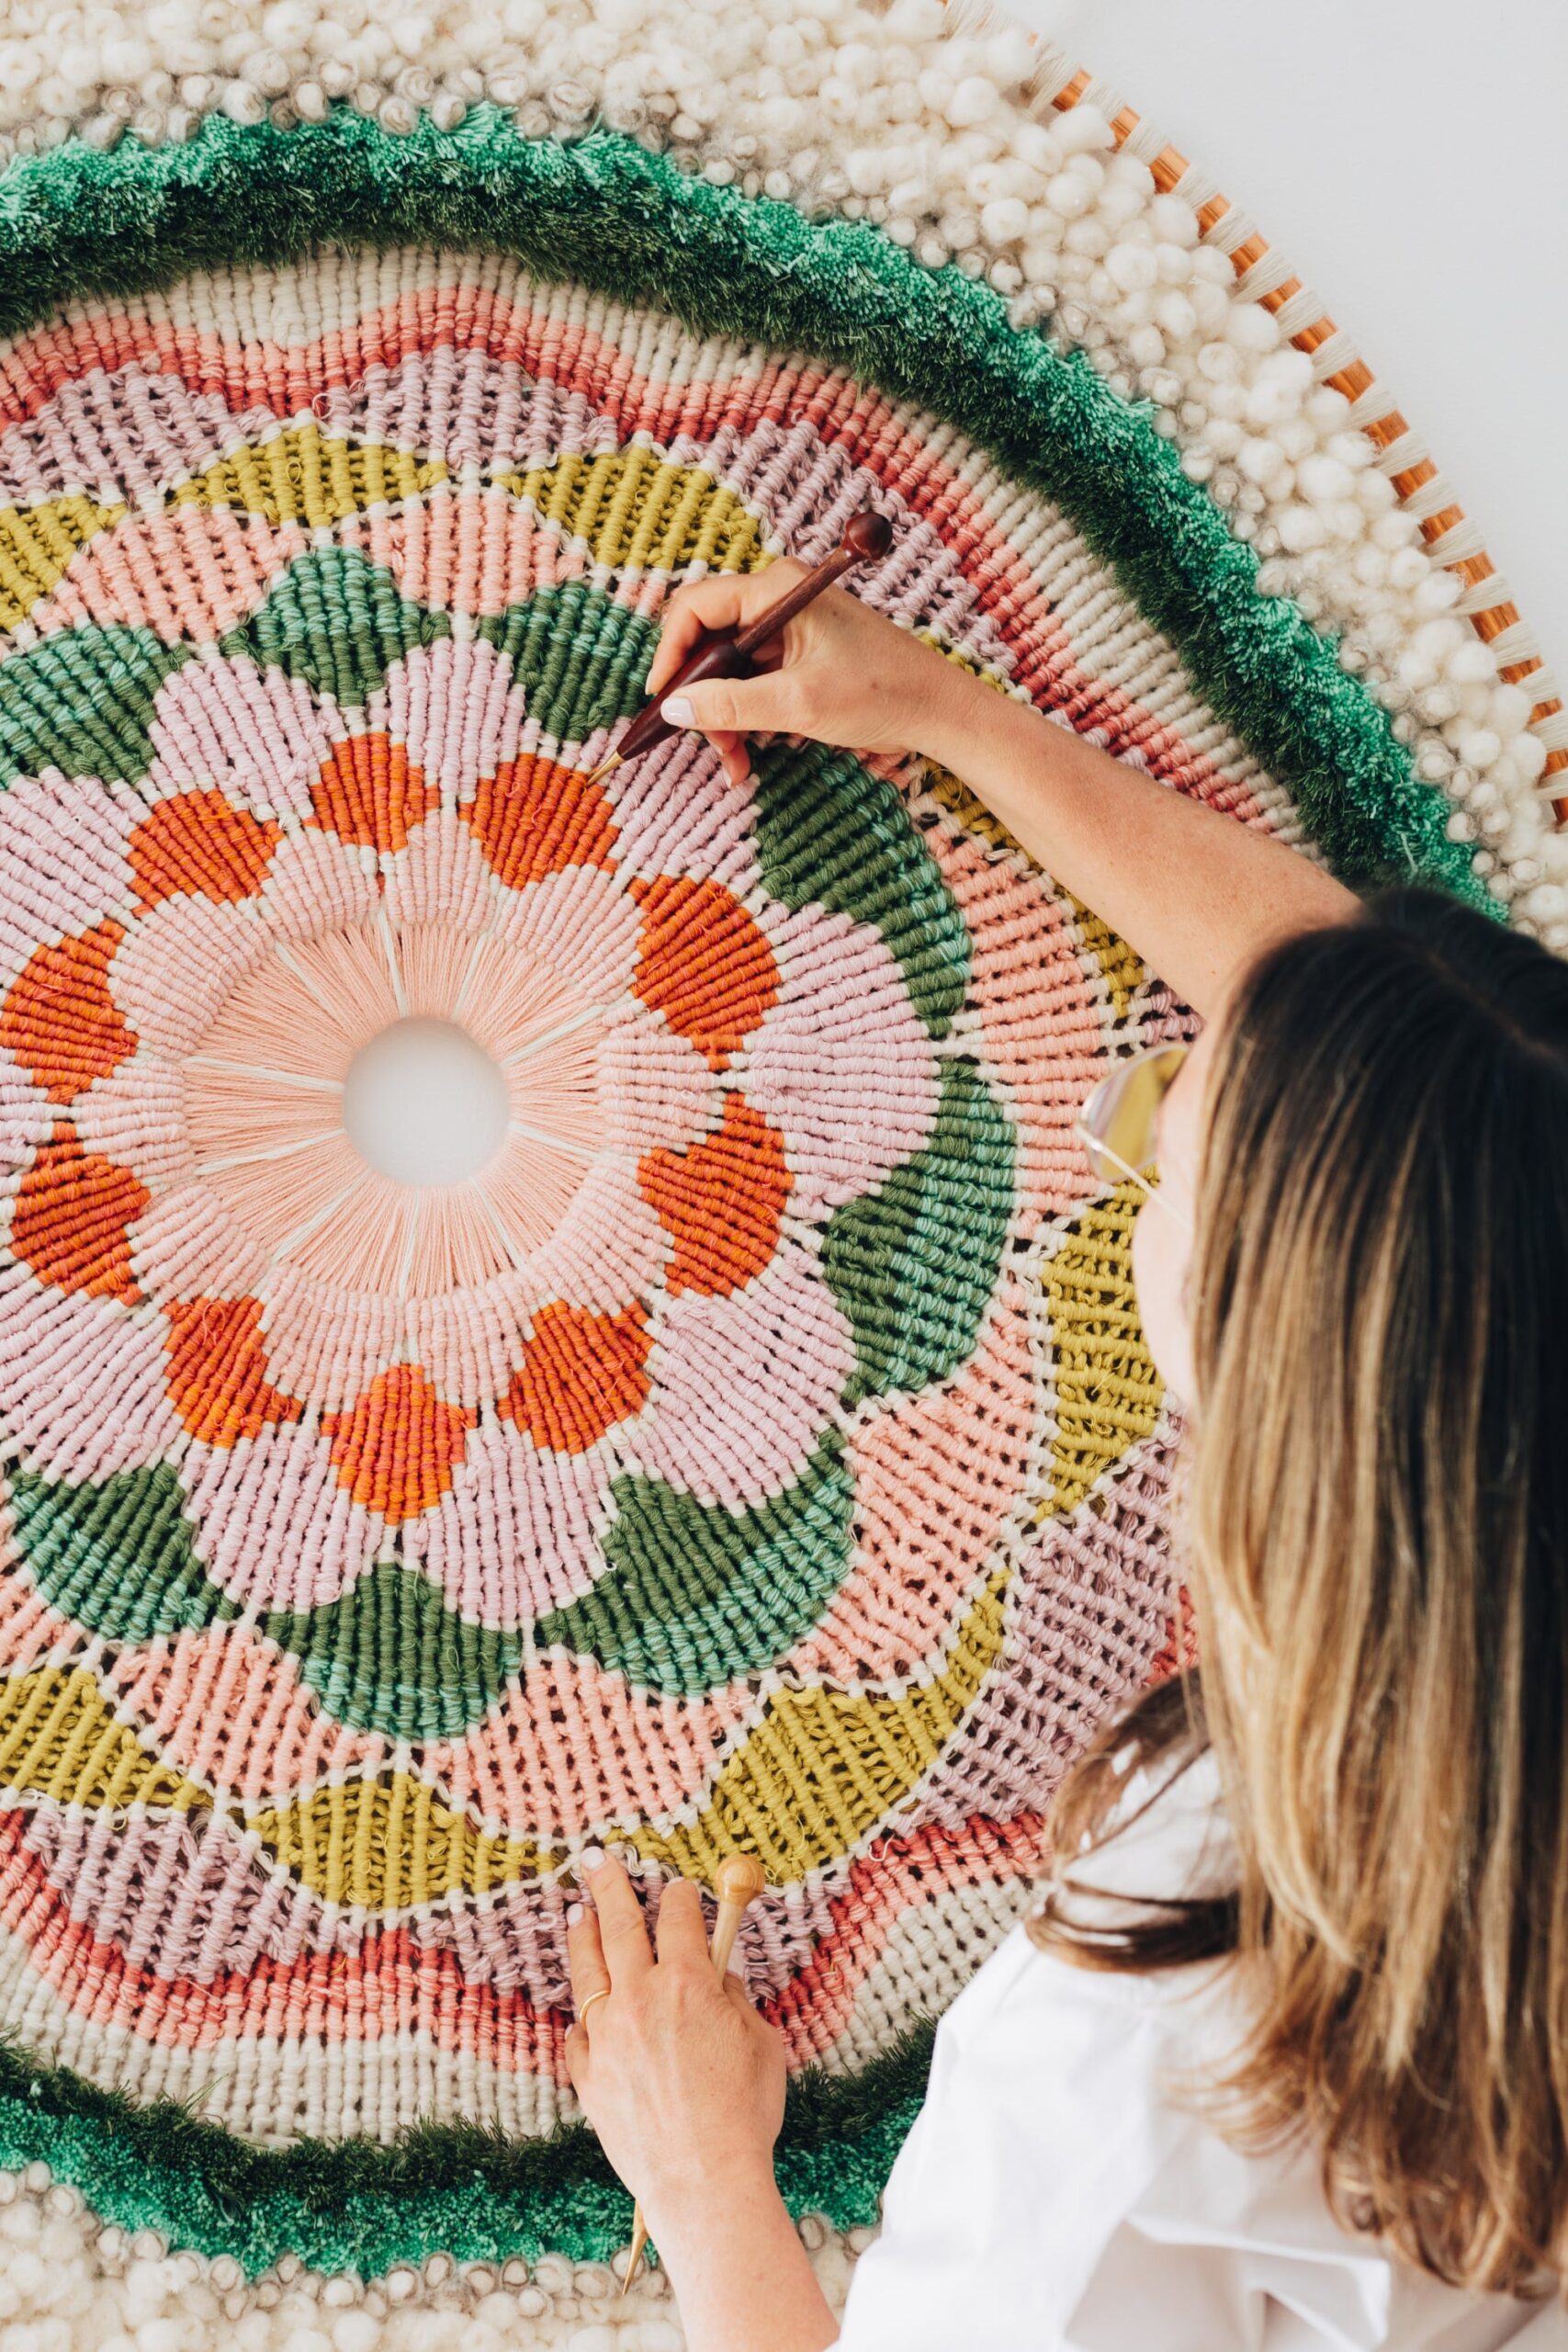 tammy kanat diseñando sus tapices de telar en fibras naturales